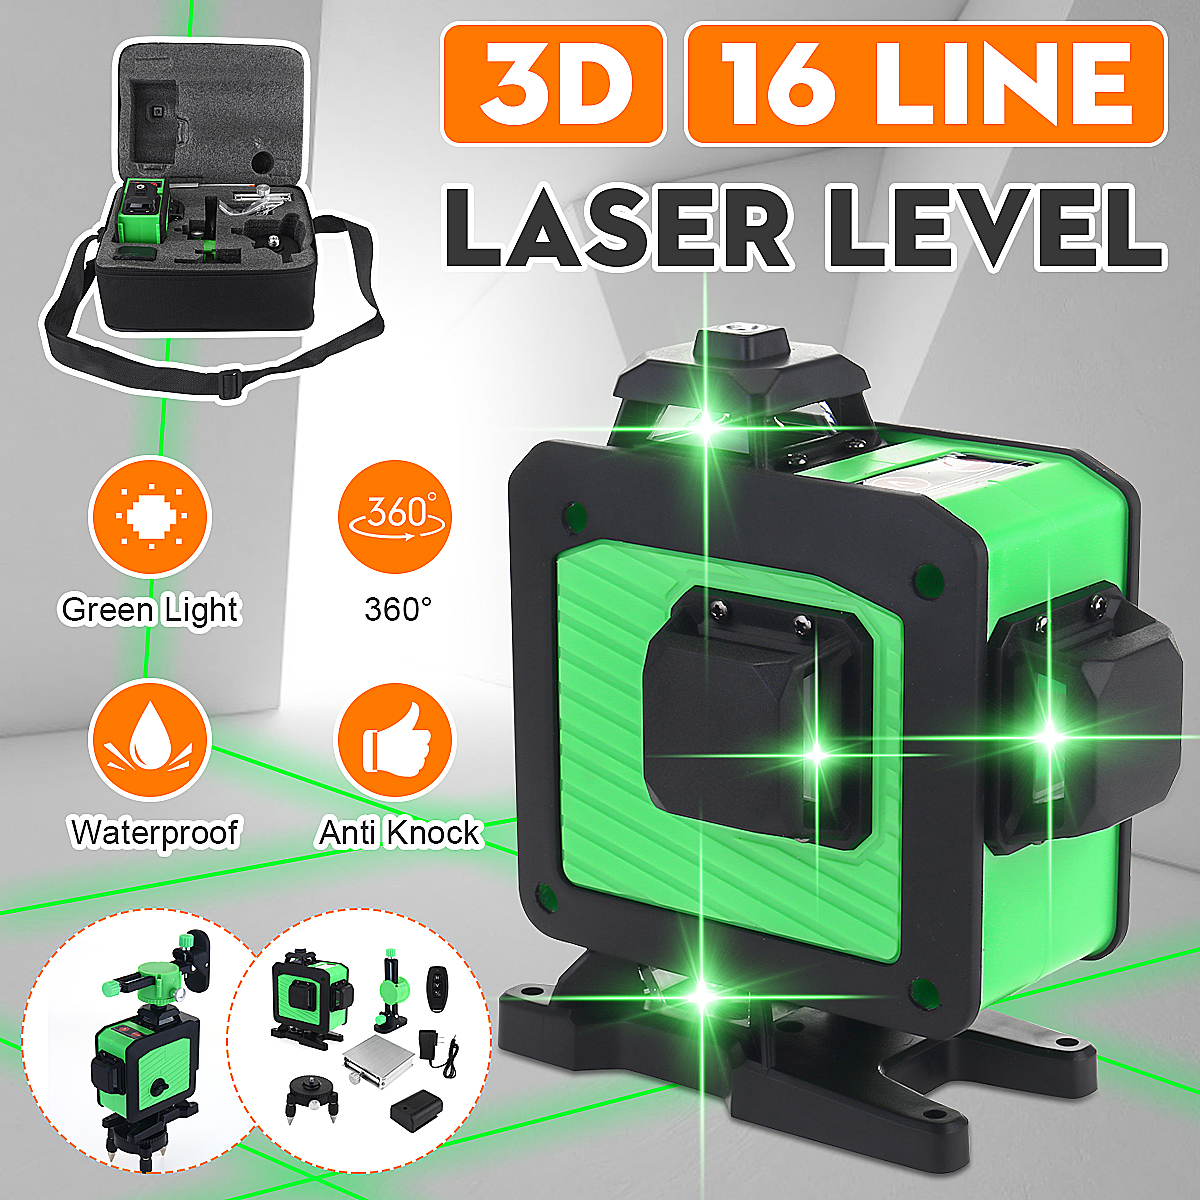 16-Line-360deg-Horizontal-Vertical-Cross-3D-Green-Light-Laser-Level-Self-Leveling-Measure-Super-Powe-1923171-1